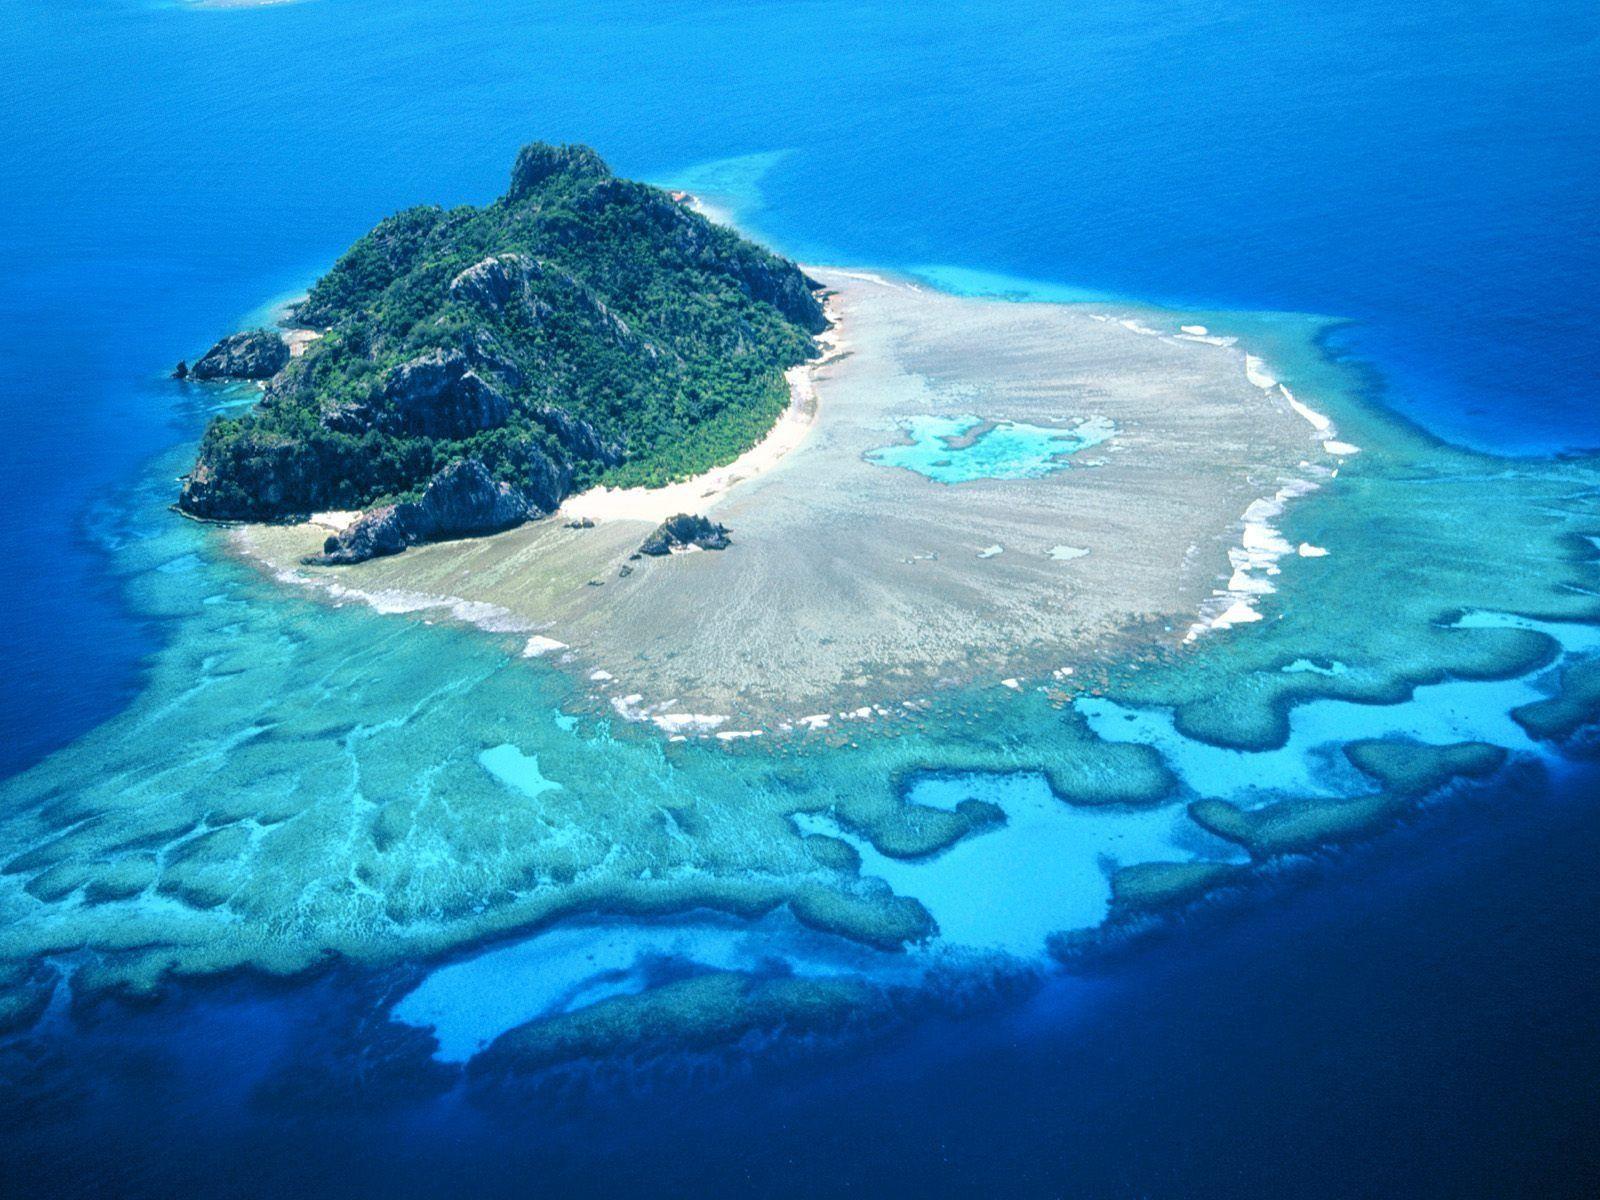 Hình nền 1600x1200 Hình nền những hòn đảo xinh đẹp để tải về miễn phí